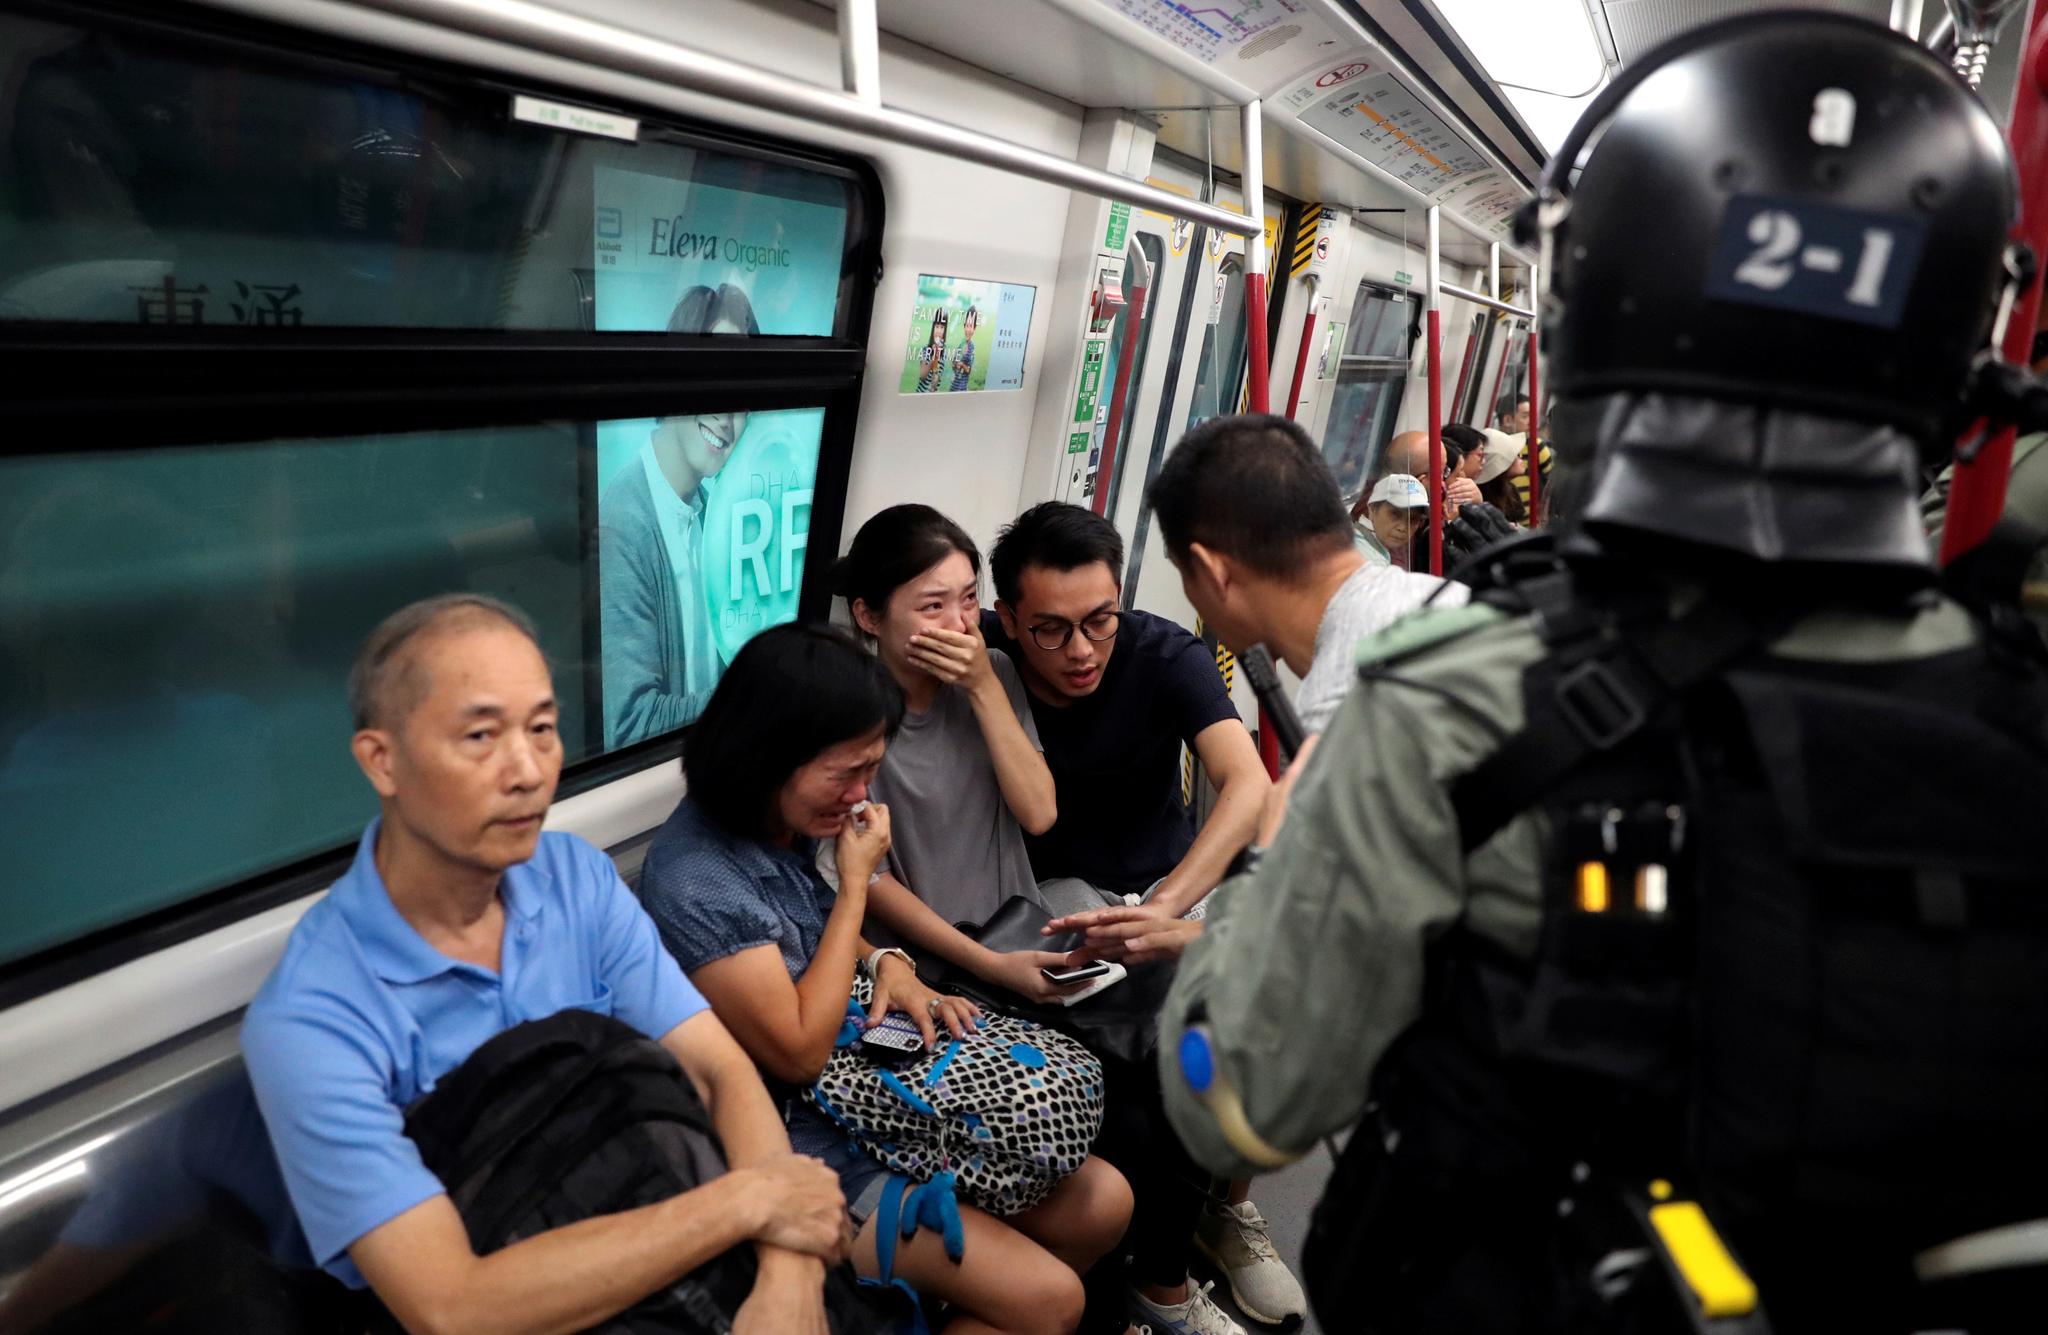 Jobbpendlere reagerer da politifolk kommer inn i en T-banevogn for å se etter demonstranter.